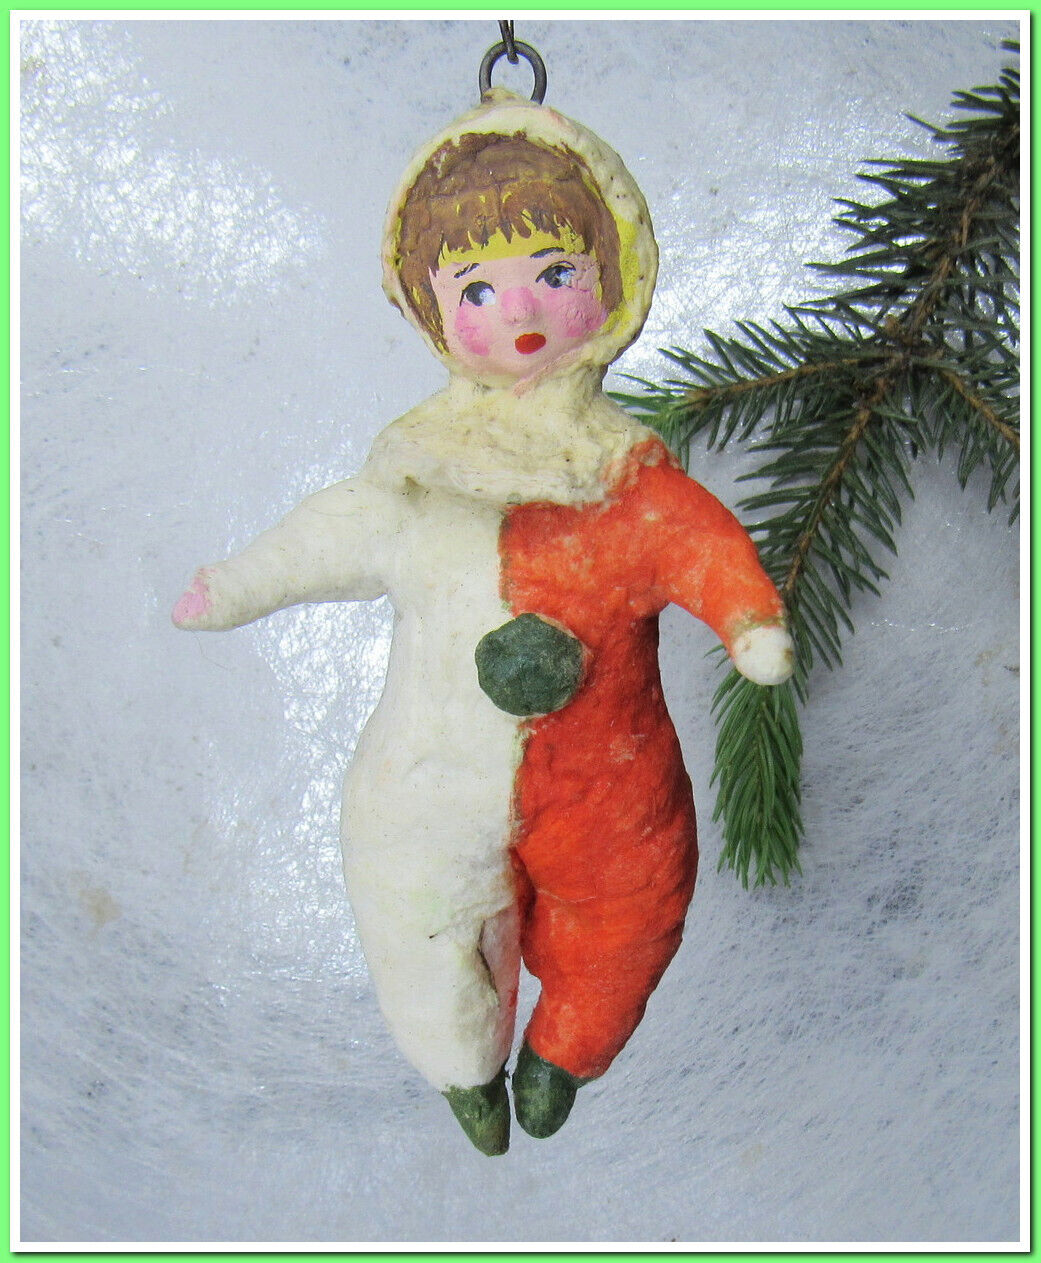 🎄Vintage antique Christmas spun cotton ornament figure #145242